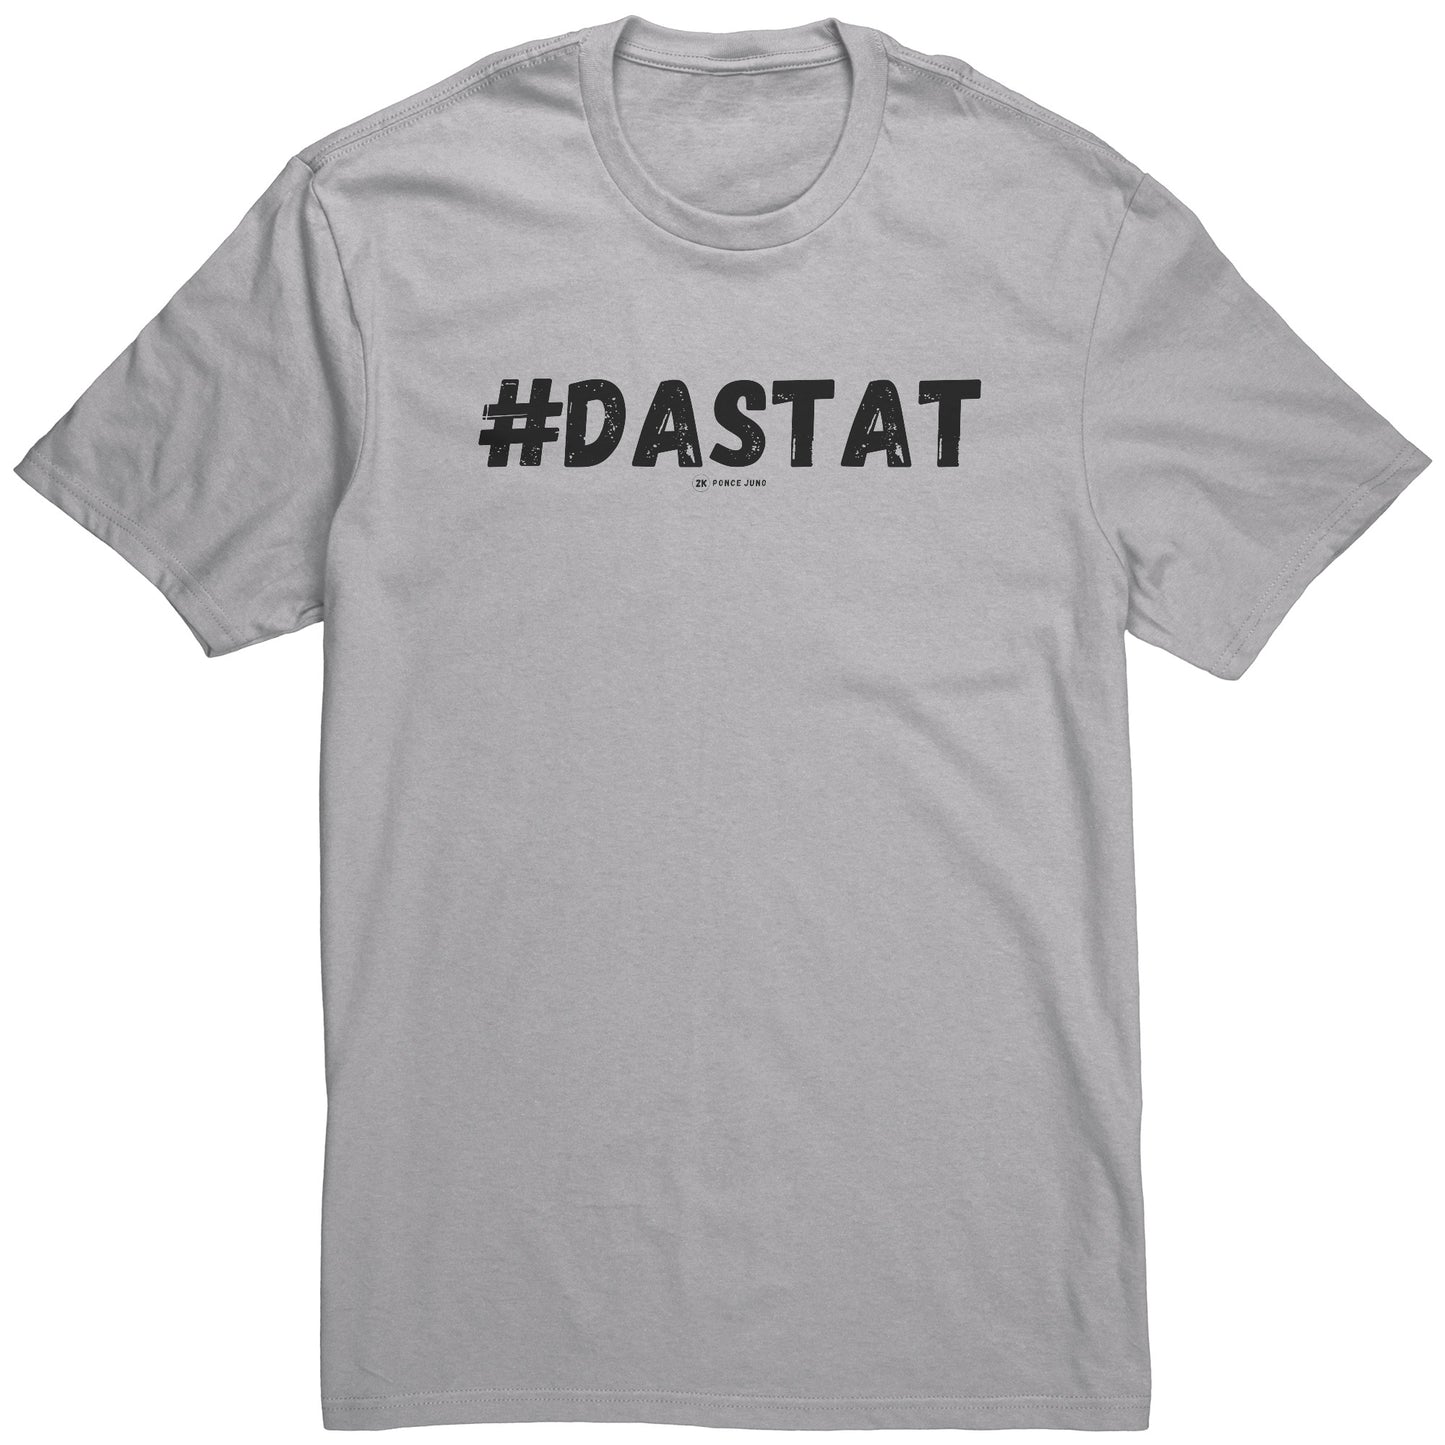 #DaStat T-shirt - Unisex